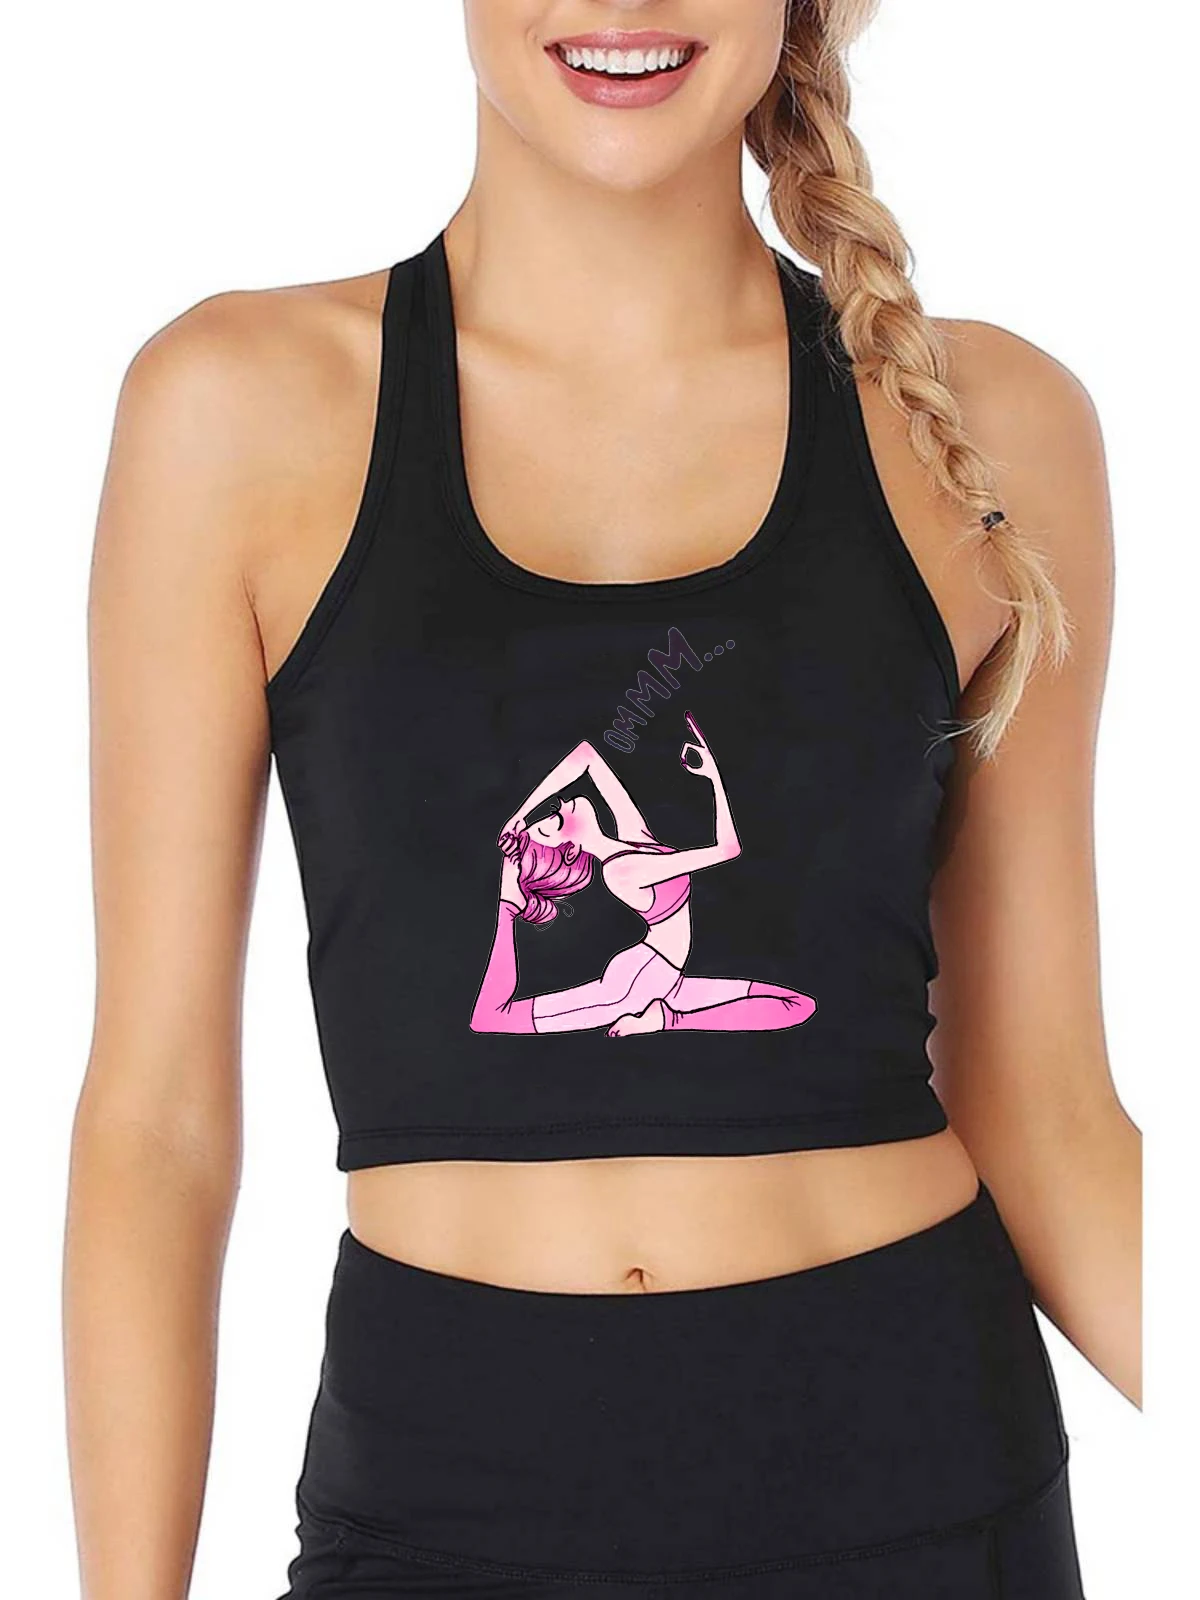 

Сексуальный облегающий кроп-топ с графикой в позе йоги, спортивный хлопковый дышащий Топ для фитнеса и тренировок для девушек, уличная мода, милая майка